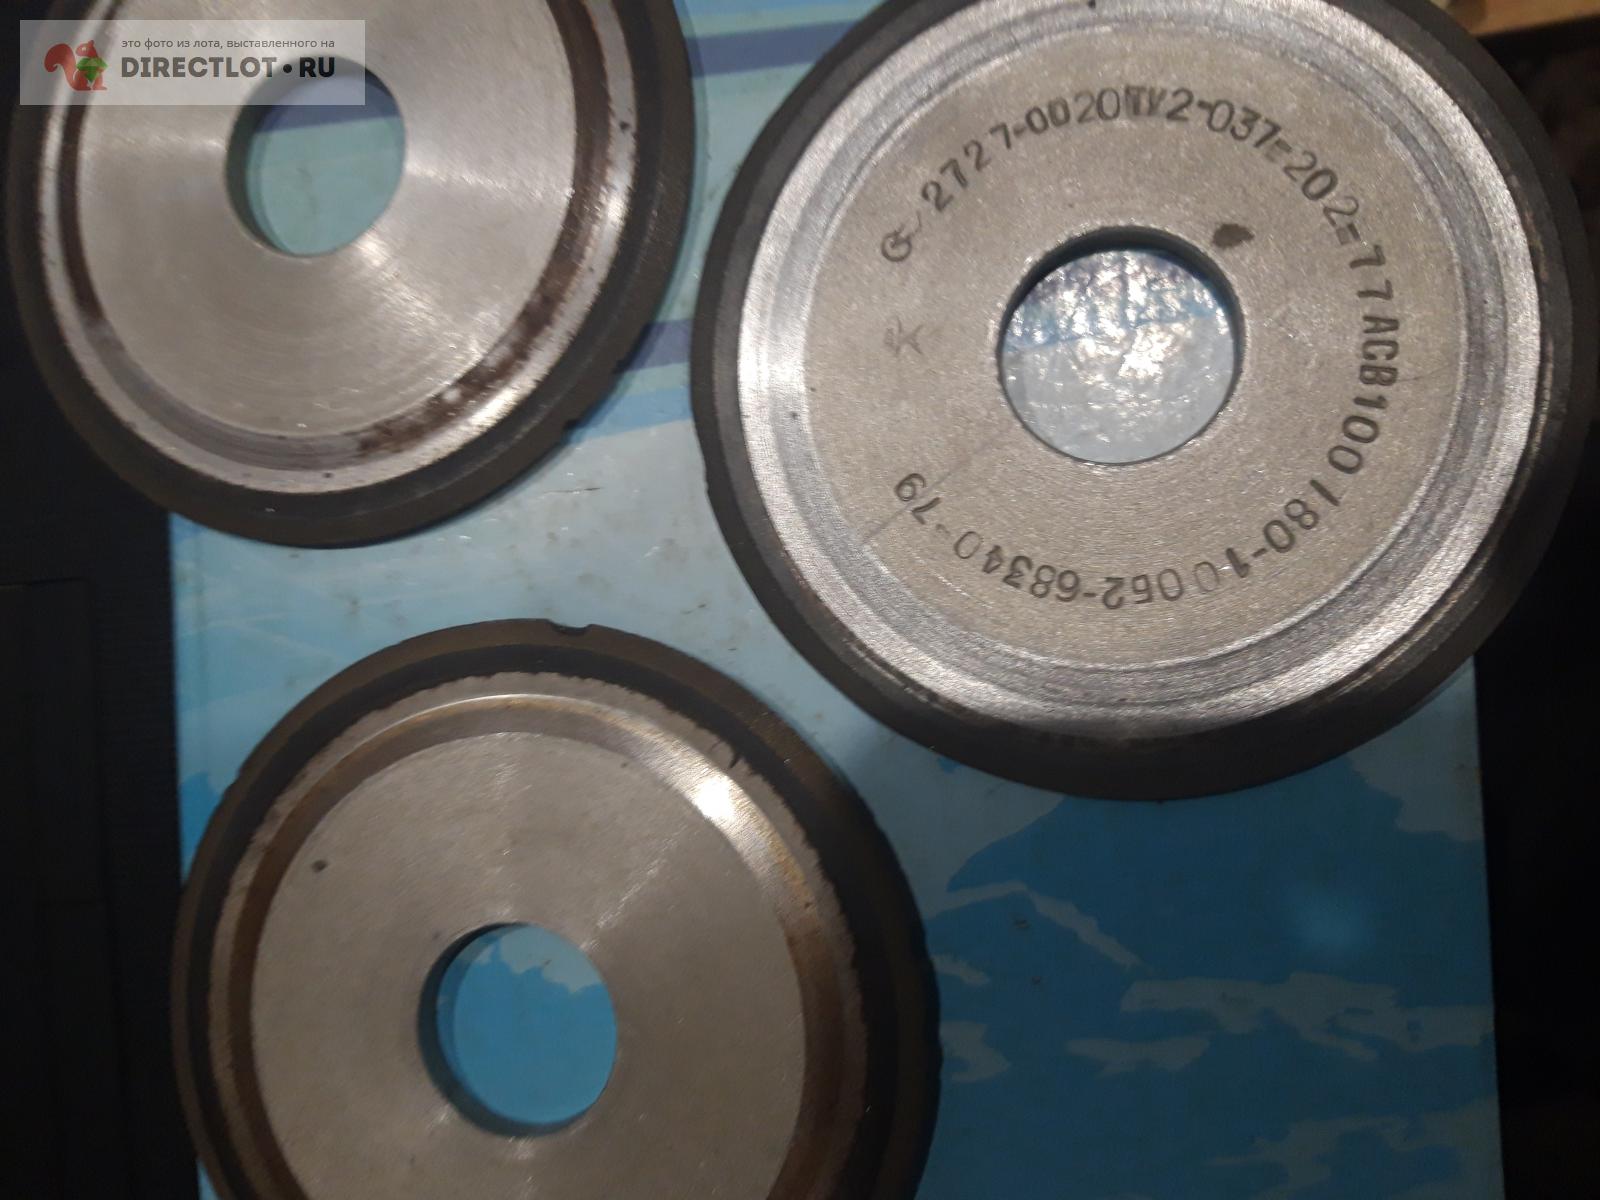 диск алмазный 125 для заточки пил острая кромка  в Таганроге цена .